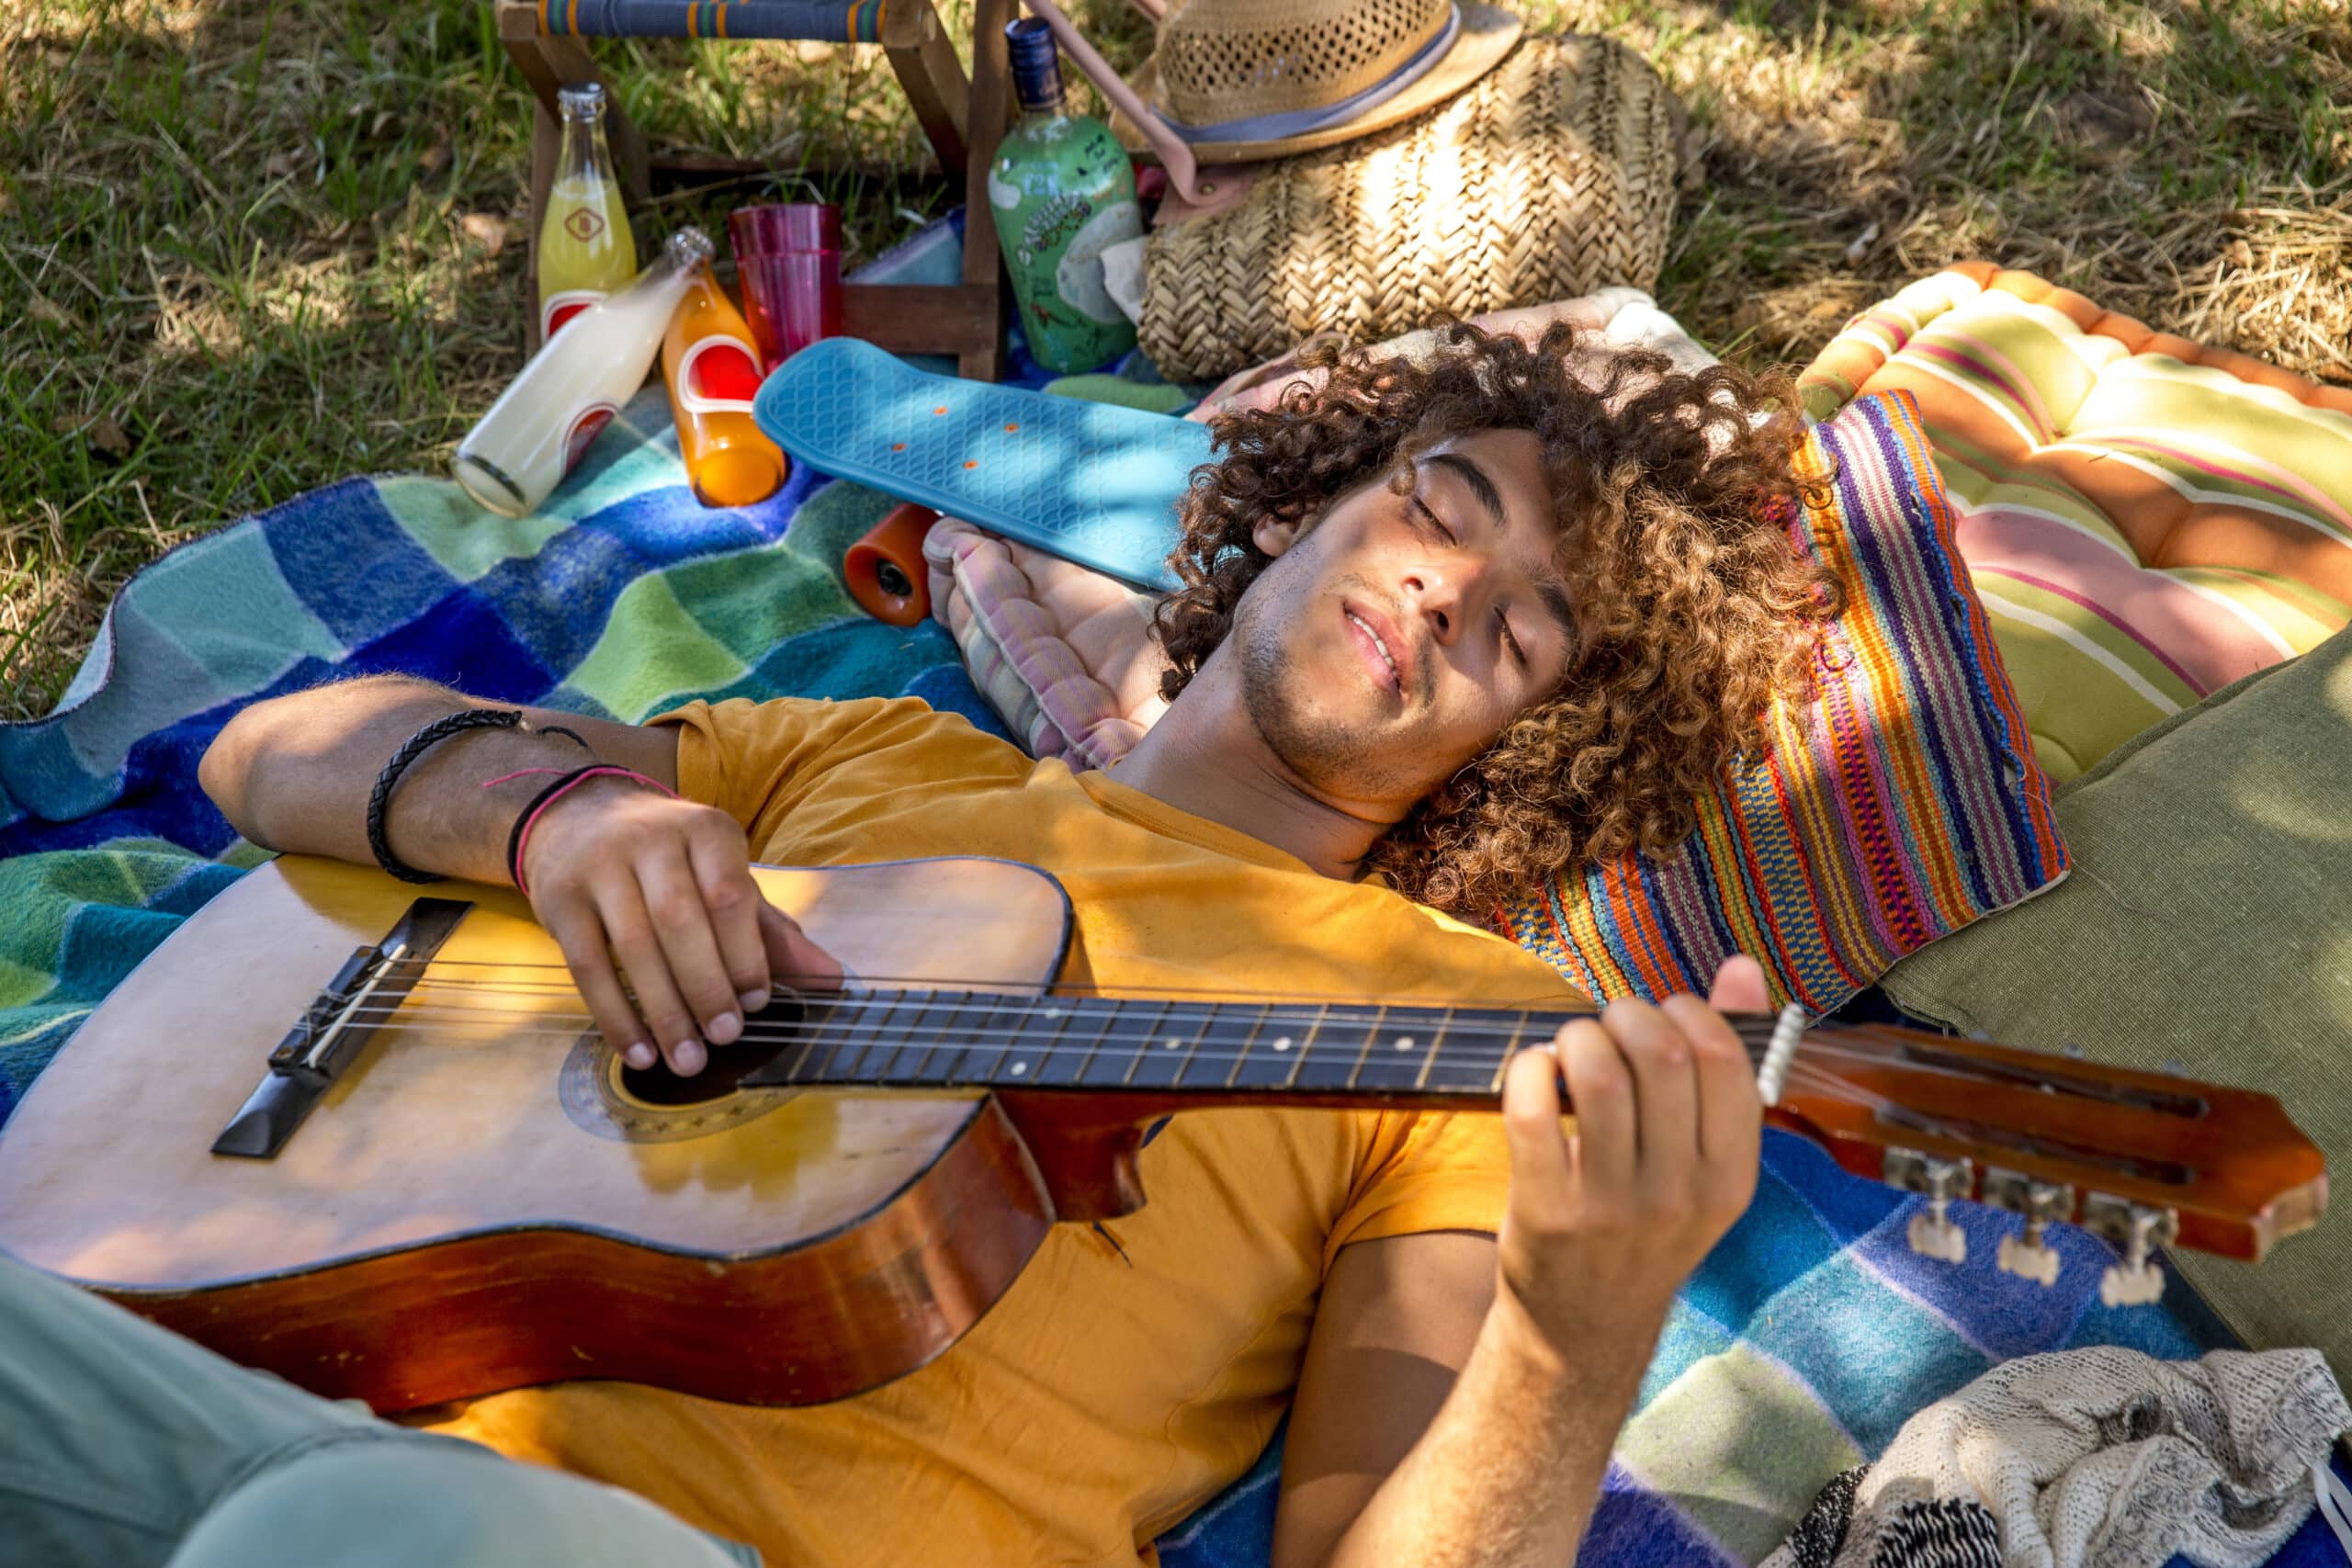 Ein junger Mann mit lockigem Haar liegt im Freien auf einer bunten Decke und hält eine Gitarre. Er hat die Augen geschlossen und genießt die Sonne, umgeben von einer gestrickten Tasche und anderen Picknicksachen. © Fotografie Tomas Rodriguez